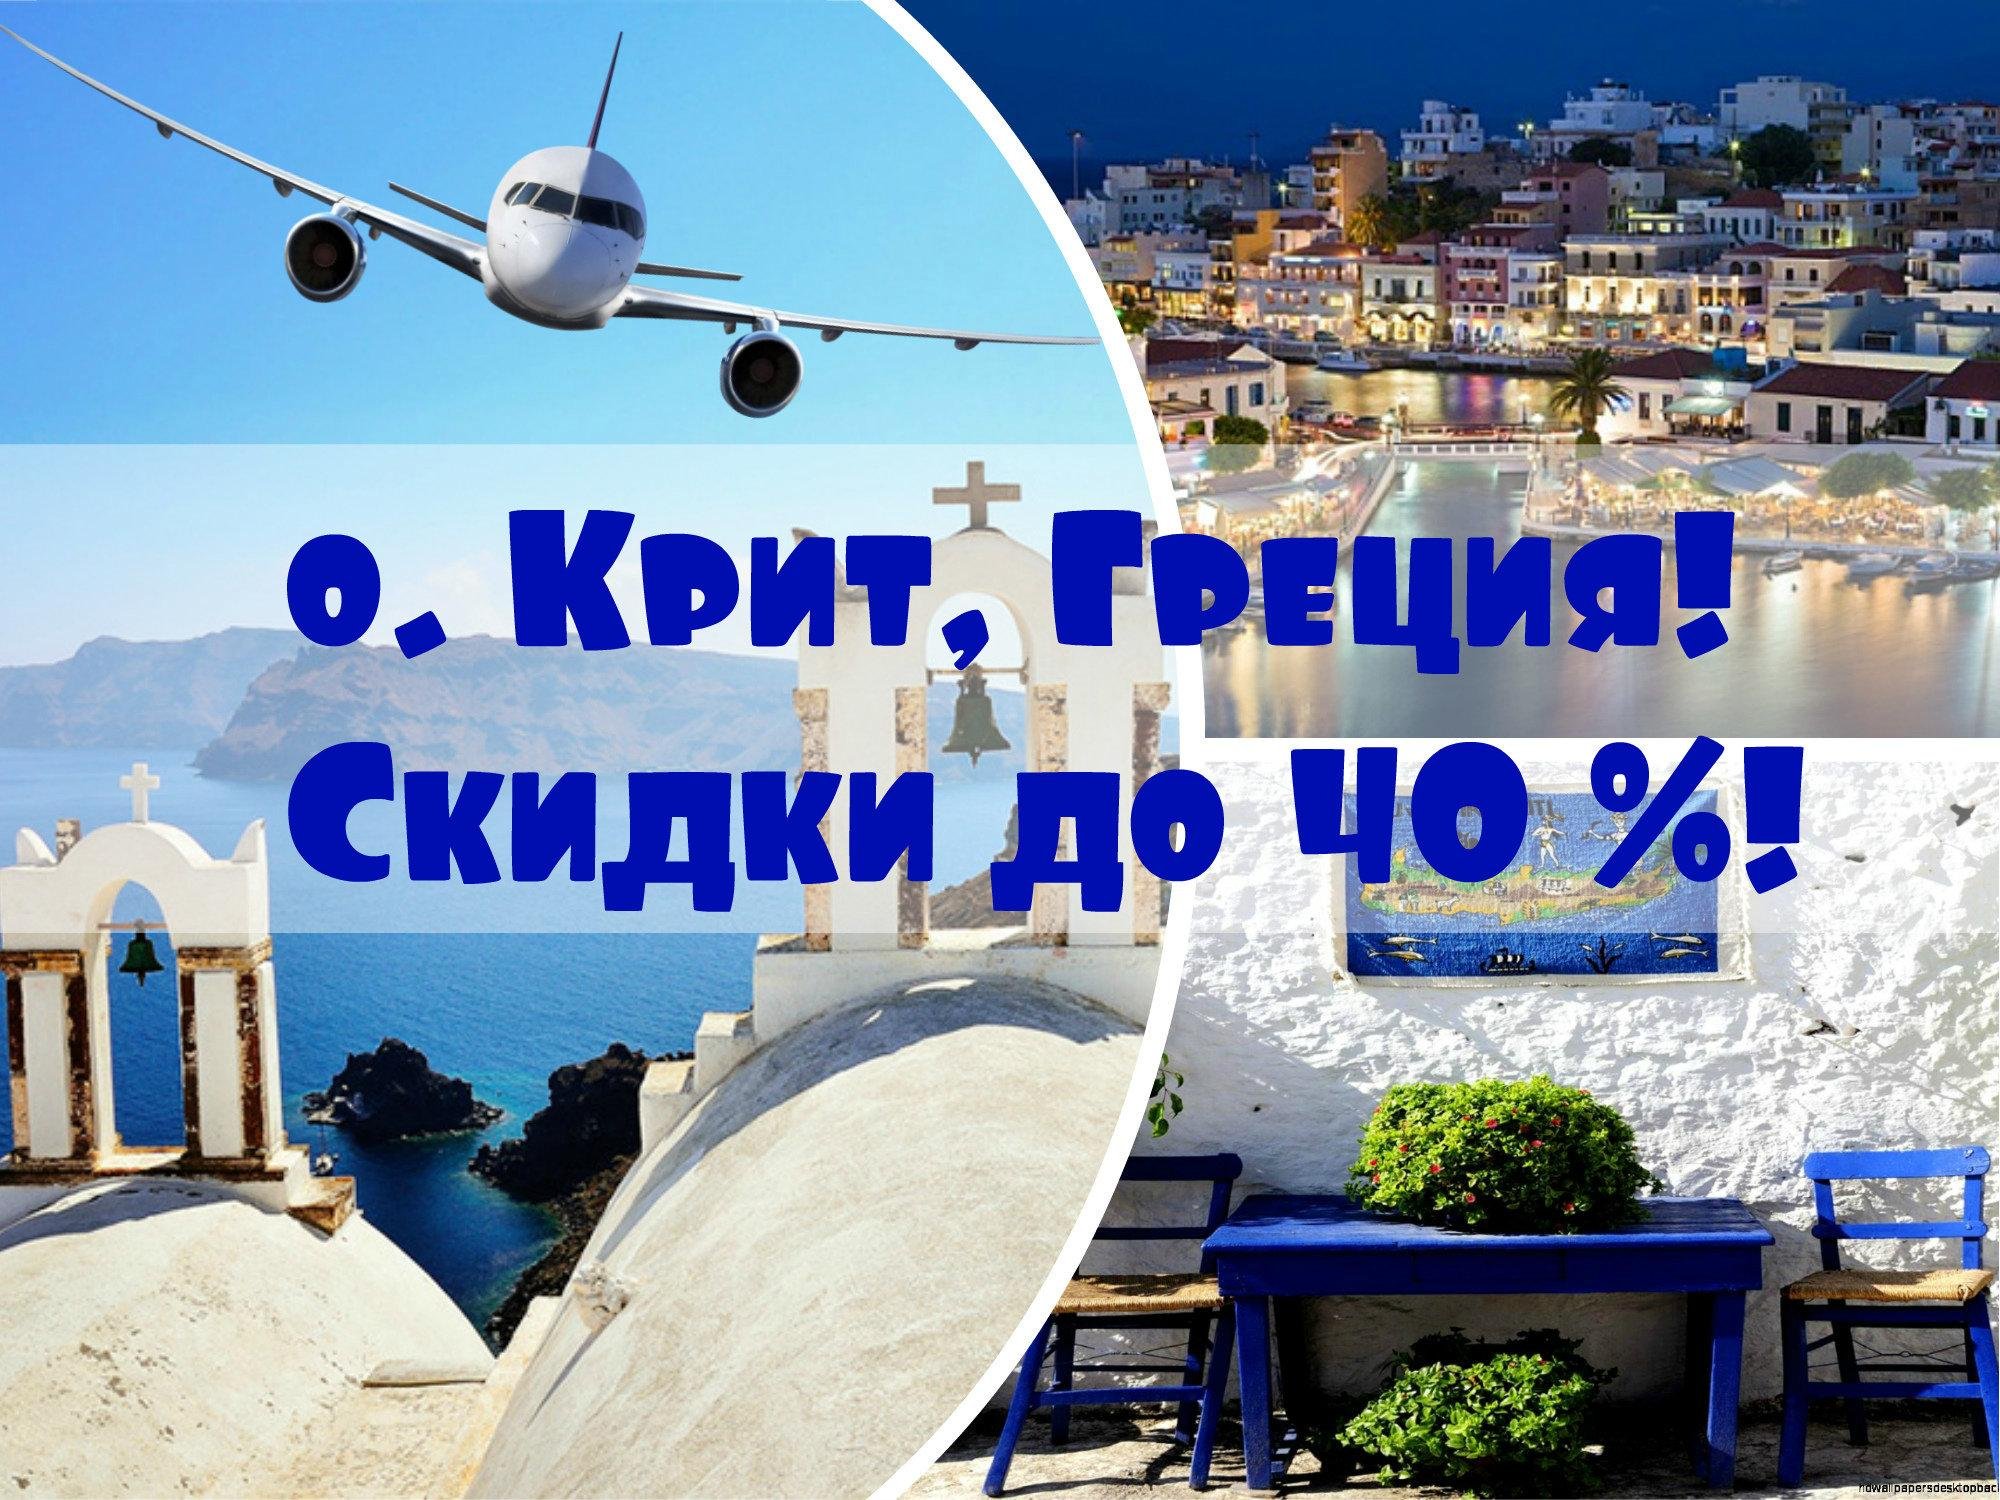 Автобусные туры в грецию. Реклама путешествия в Грецию. Греция раннее бронирование. Греция турагентство. Туристическая реклама Греция.